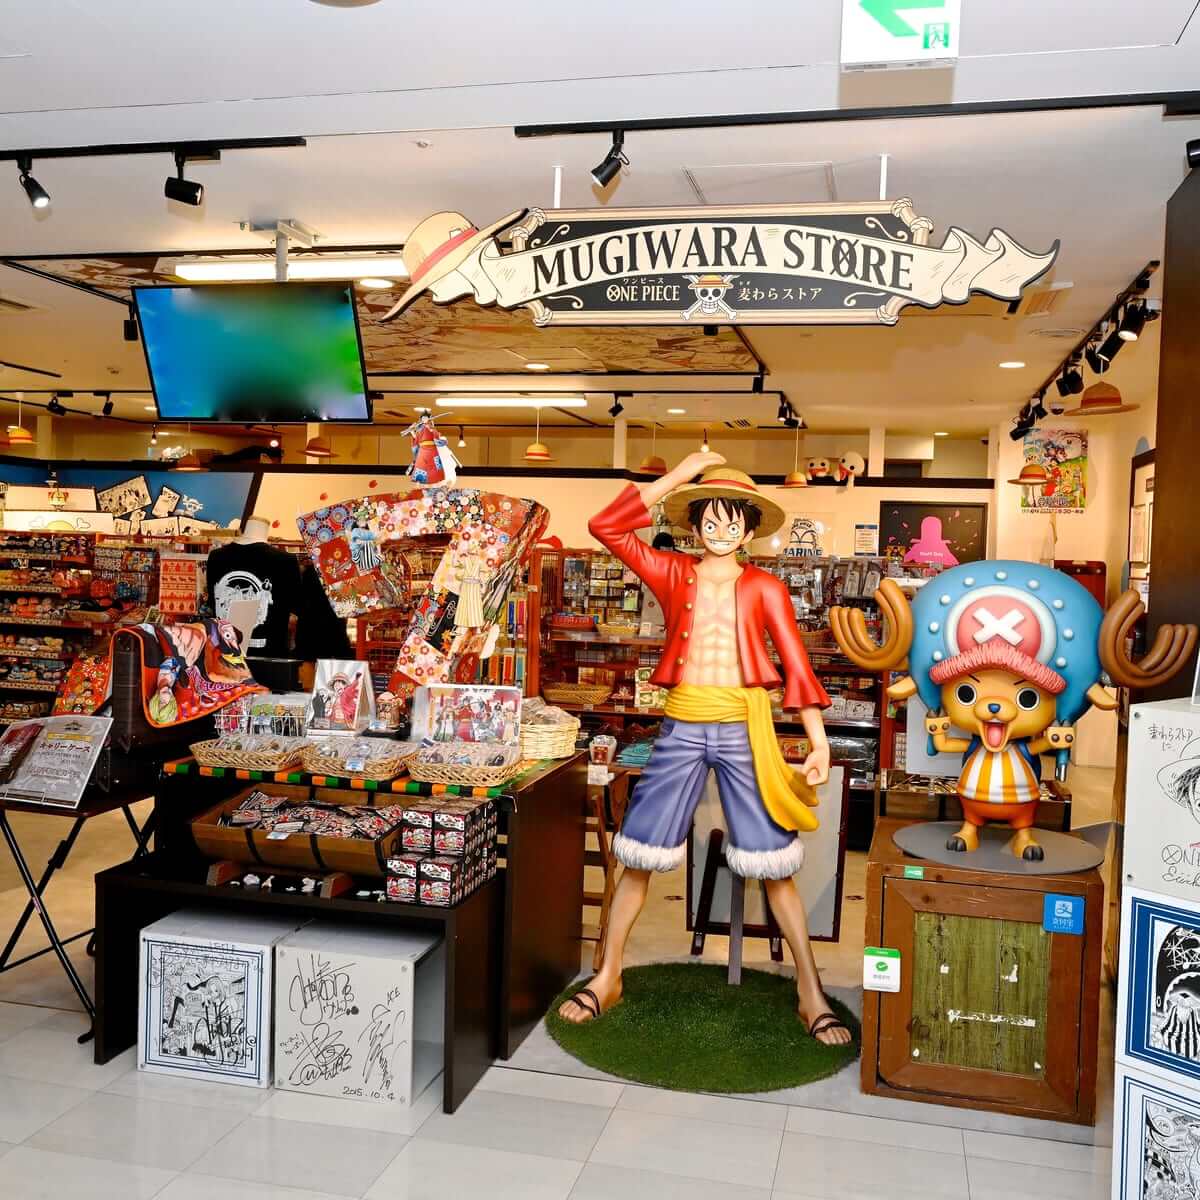 アニメ放映周年記念 One Piece 渋谷 ワノ国 計画 Magnet By Shibuya 109 キャンペーン Dtimes